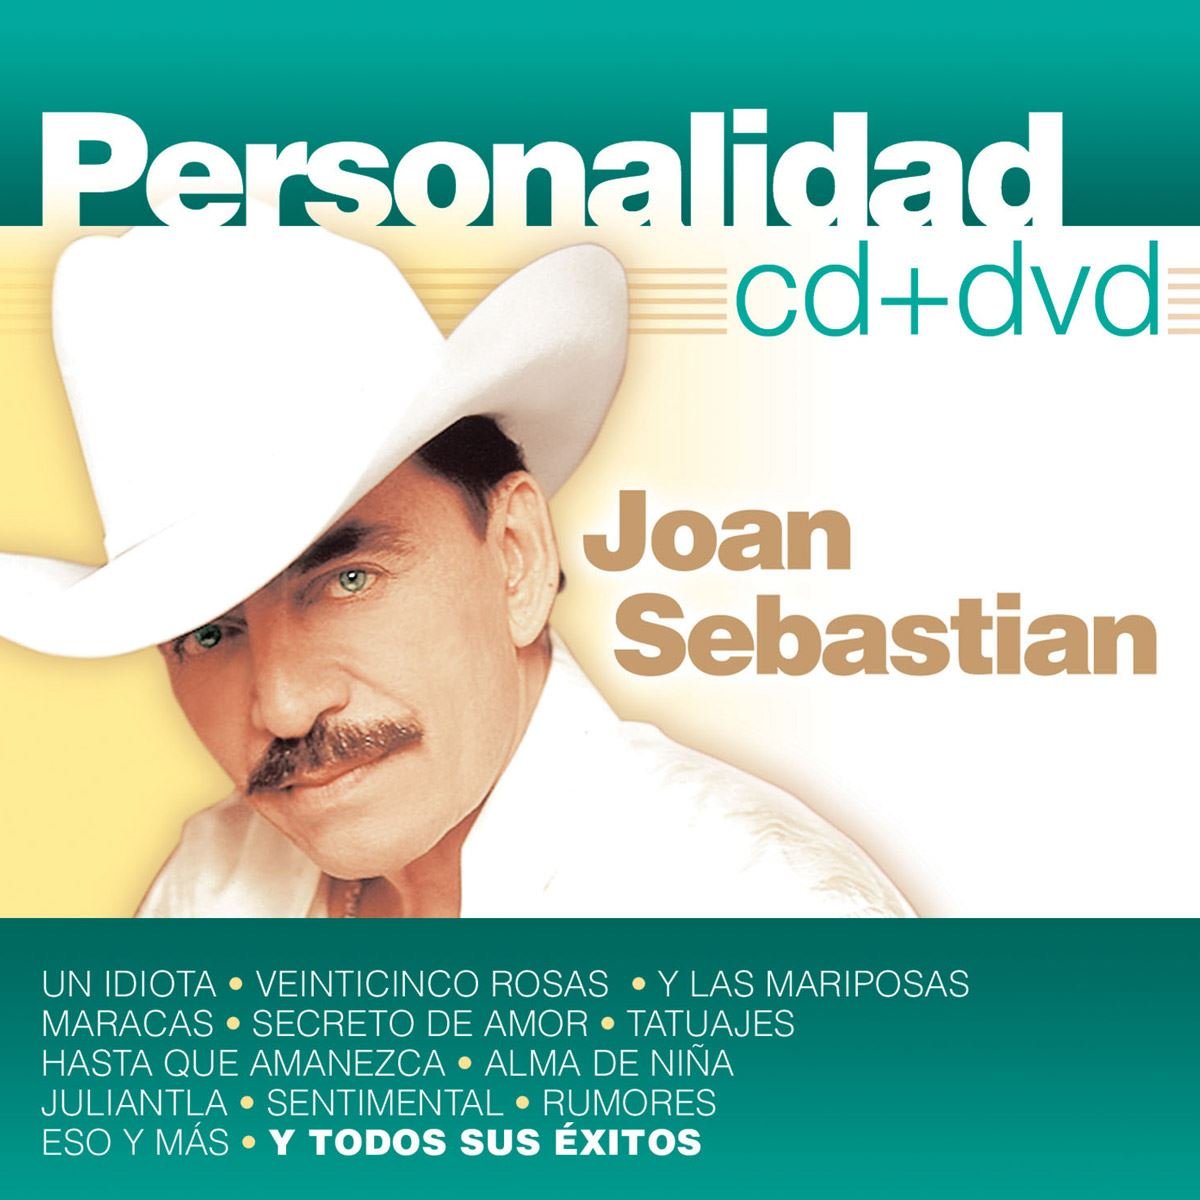 Cd+Dvd Joan Sebastian Personalidad